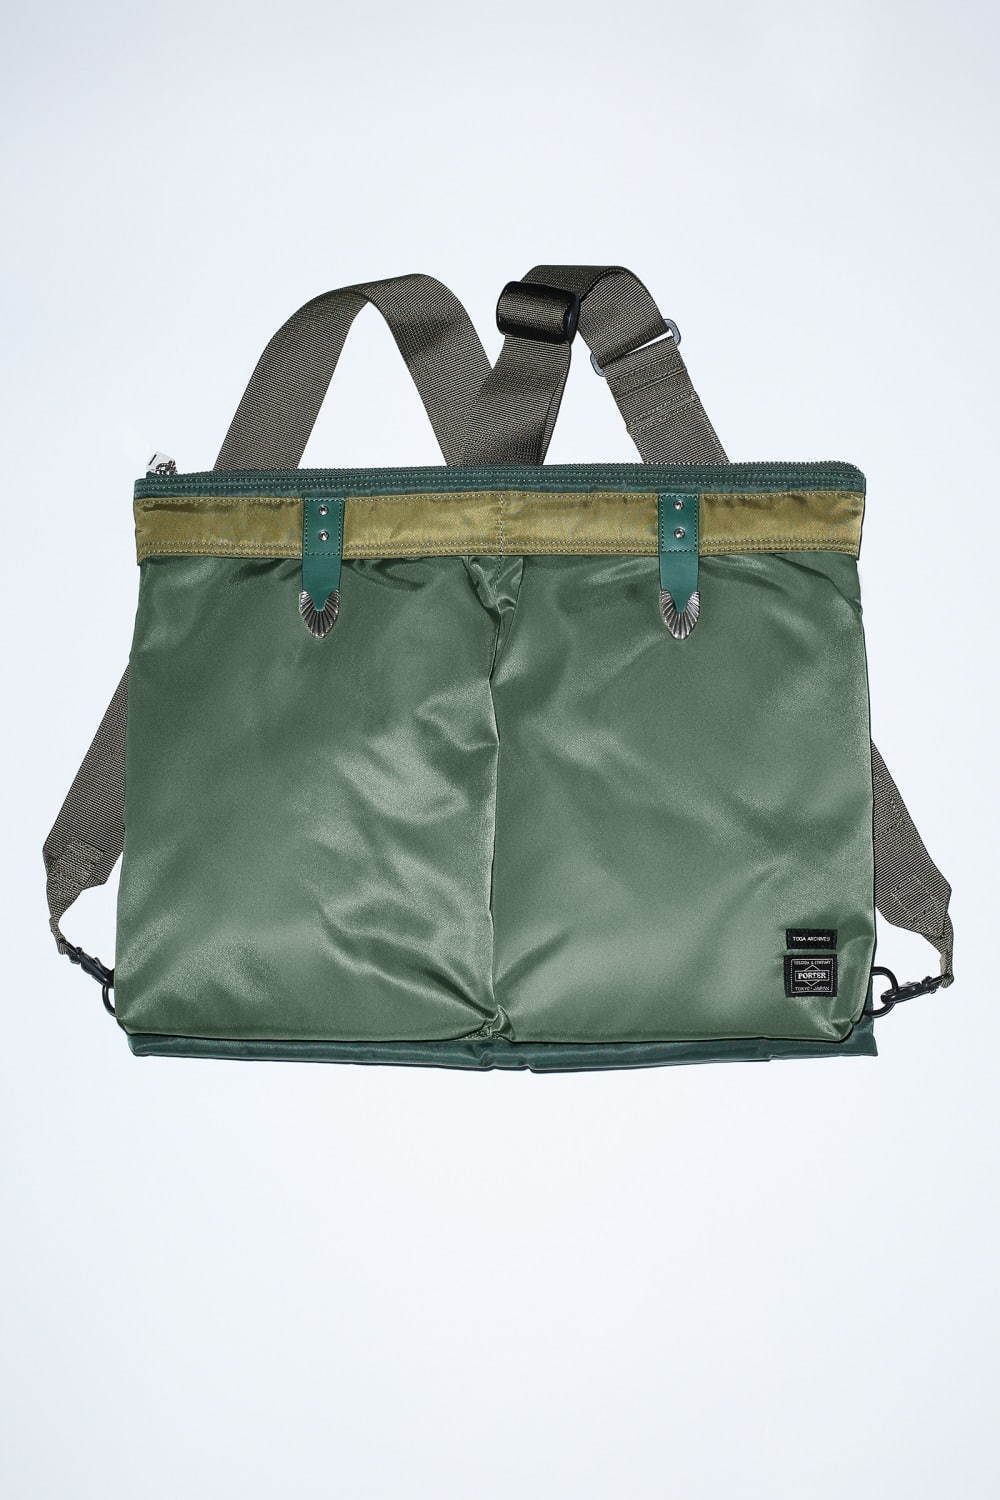 トーガ × ポーターコラボバッグ第2弾、コンチョを配したベルト バッグ